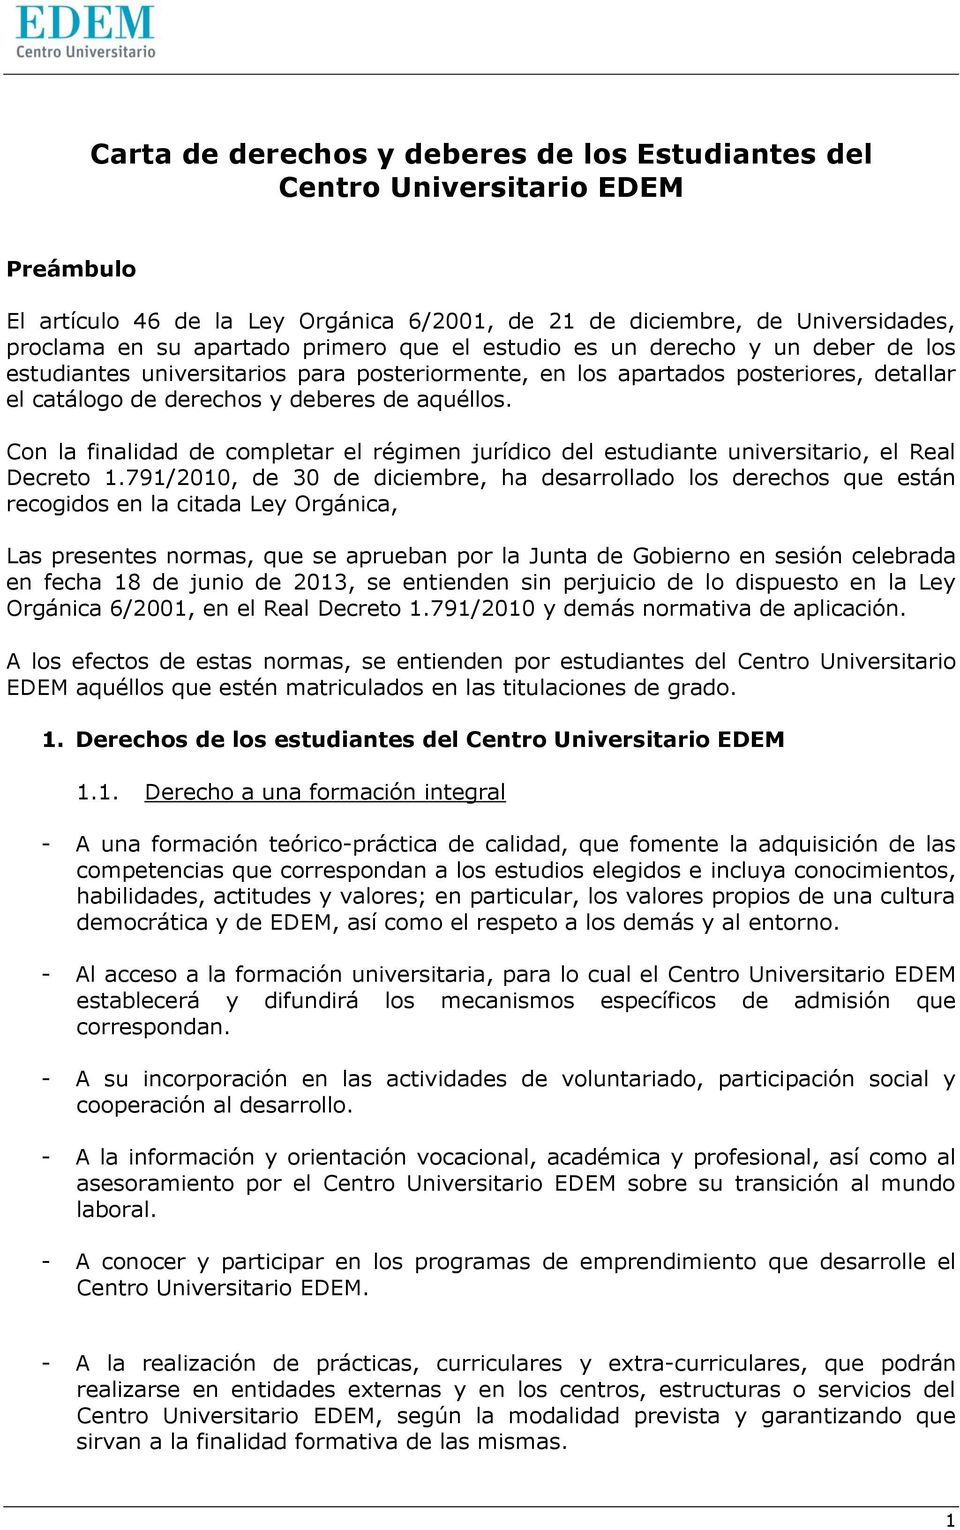 Con la finalidad de completar el régimen jurídico del estudiante universitario, el Real Decreto 1.